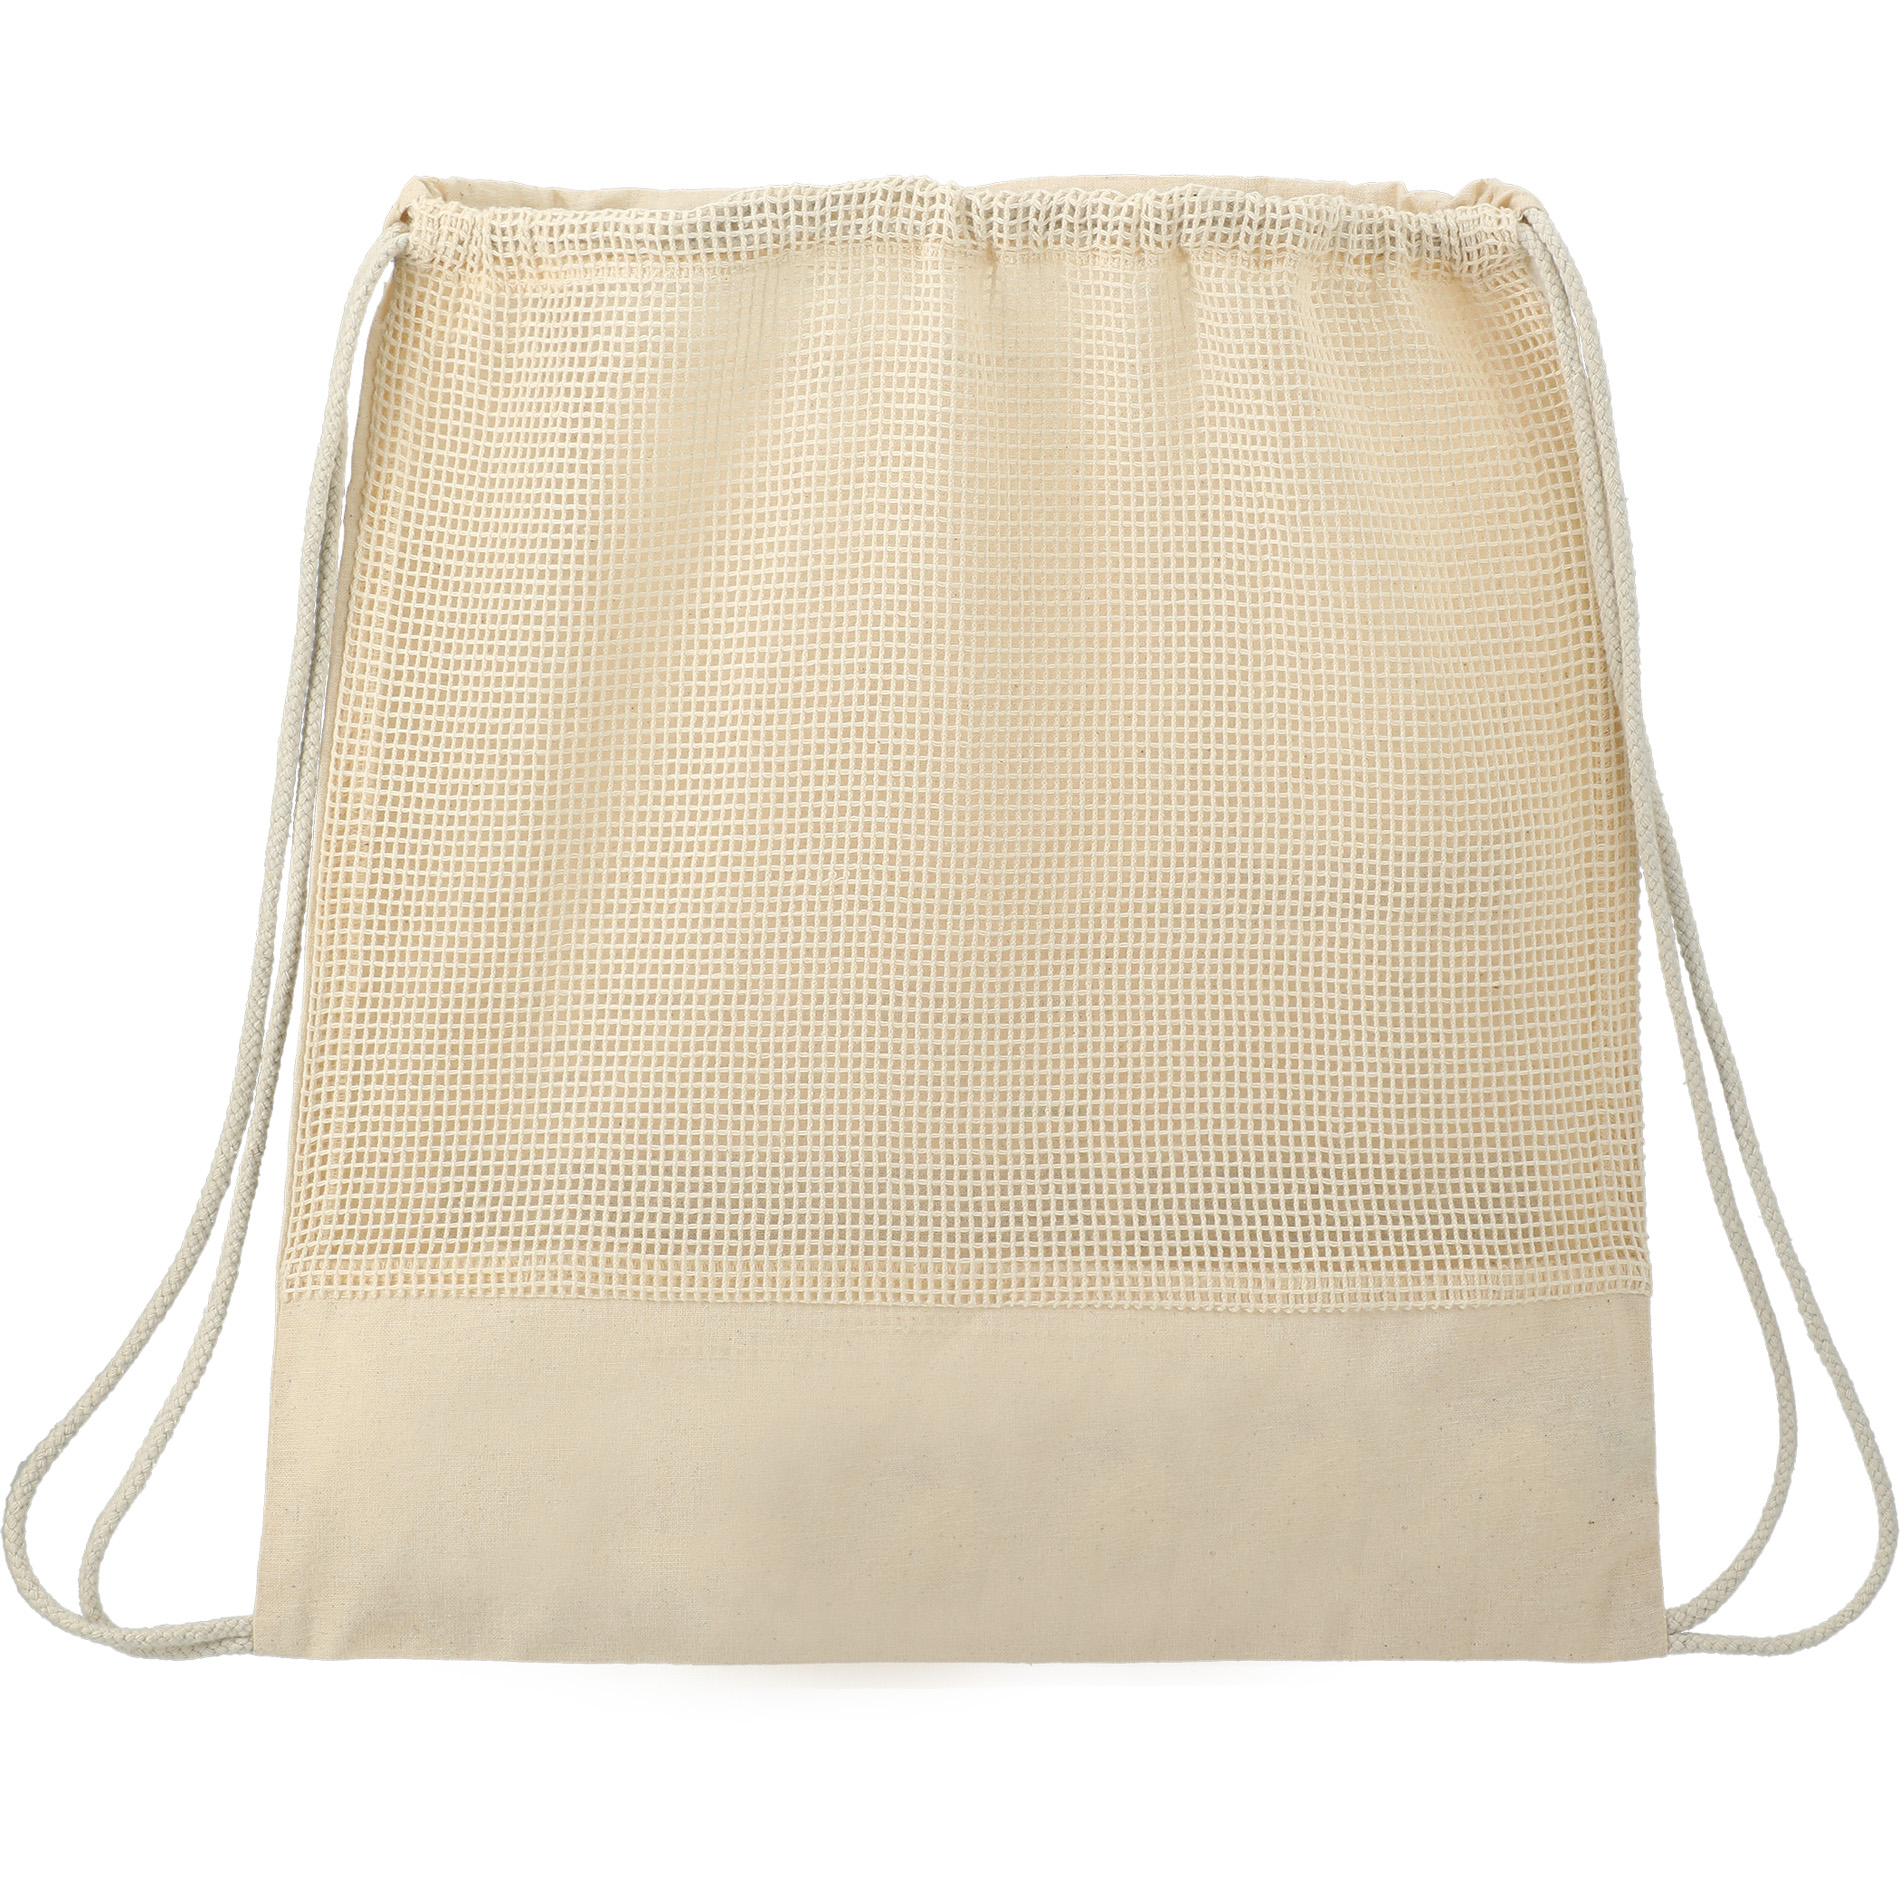 LEEDS 3005-71 - Cotton Mesh Drawstring Bag